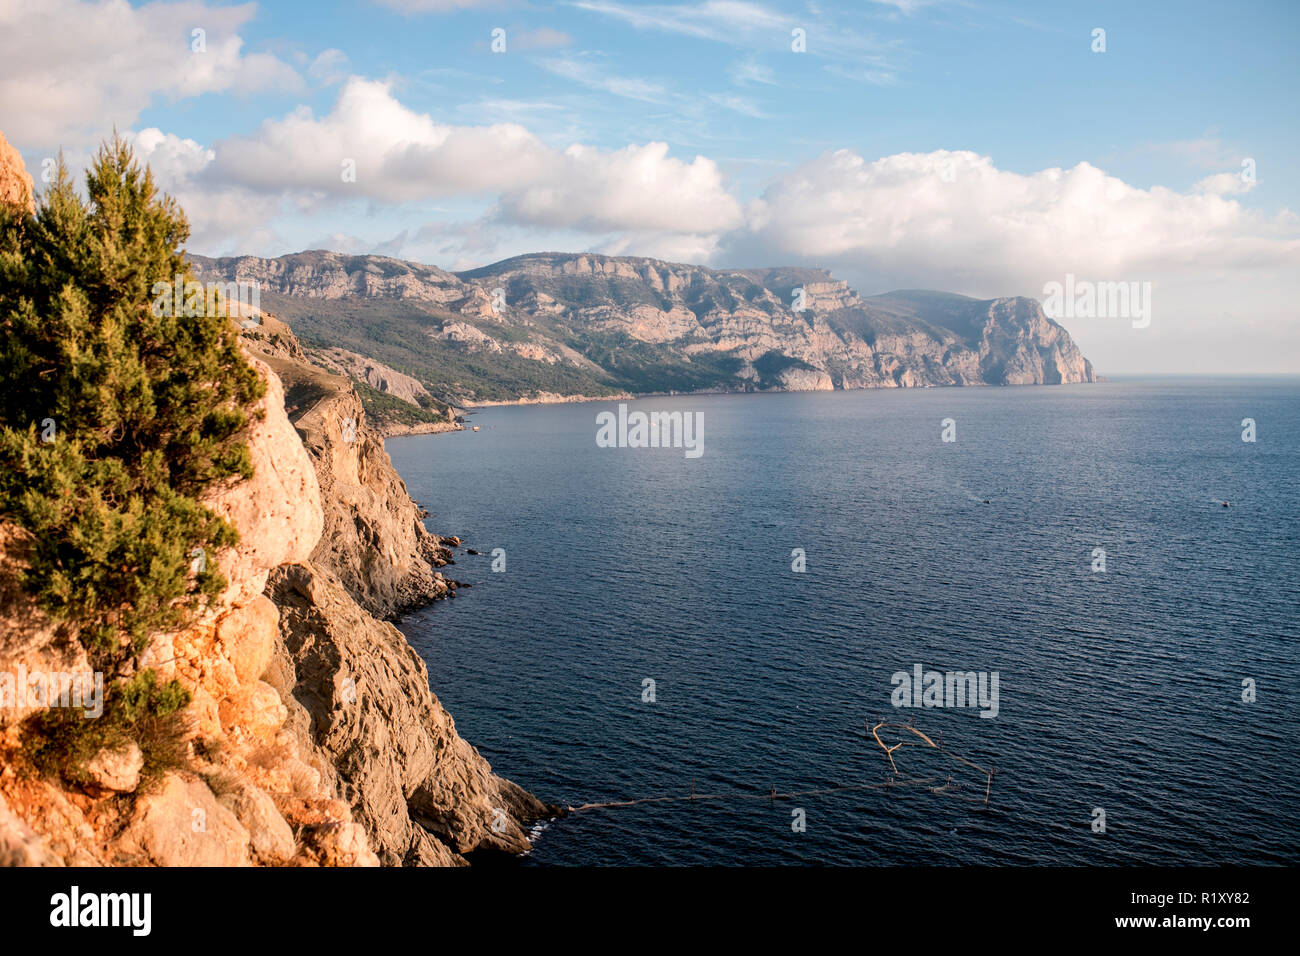 South coast of Crimea landscape, Black Sea. Stock Photo